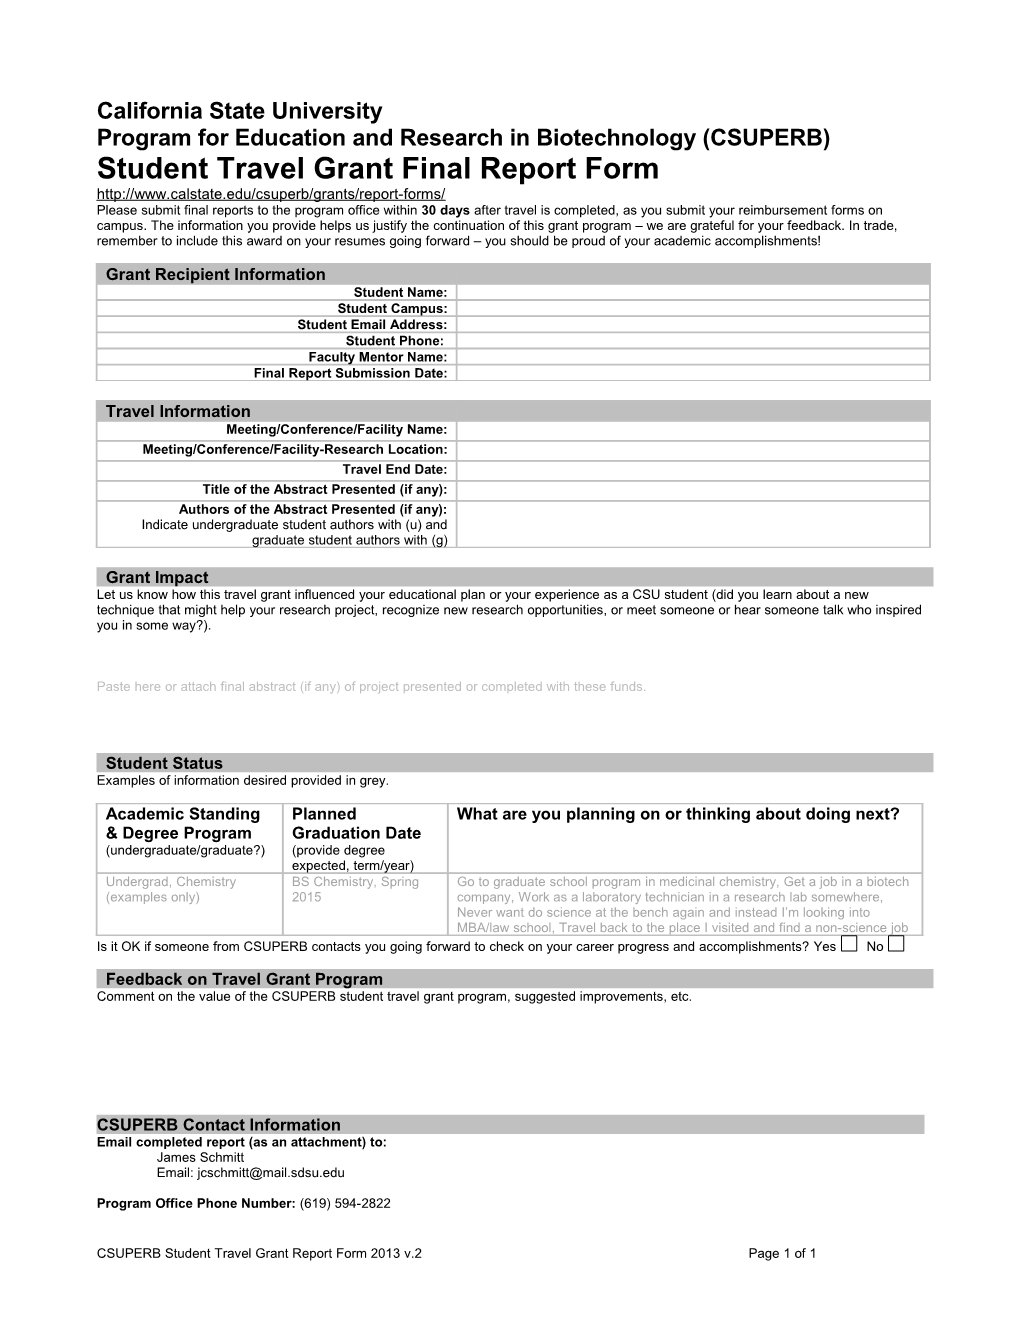 CSUPERB Grant Final Report Form